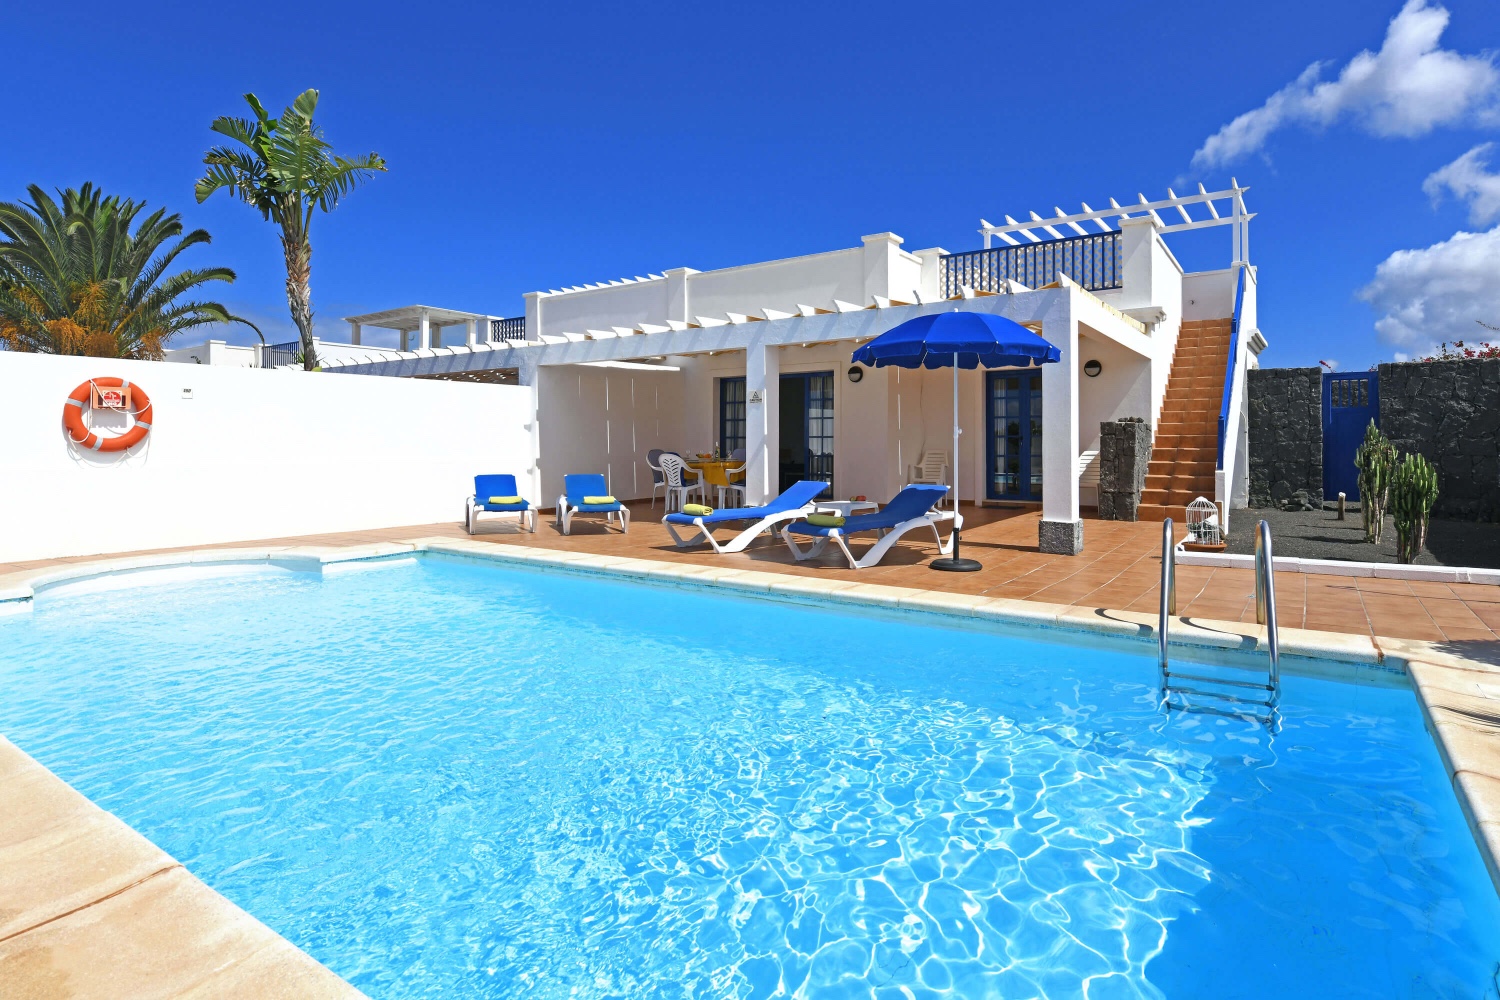 Vacances de style maritime et avec piscine privée dans un quartier résidentiel près de la Playa Blanca